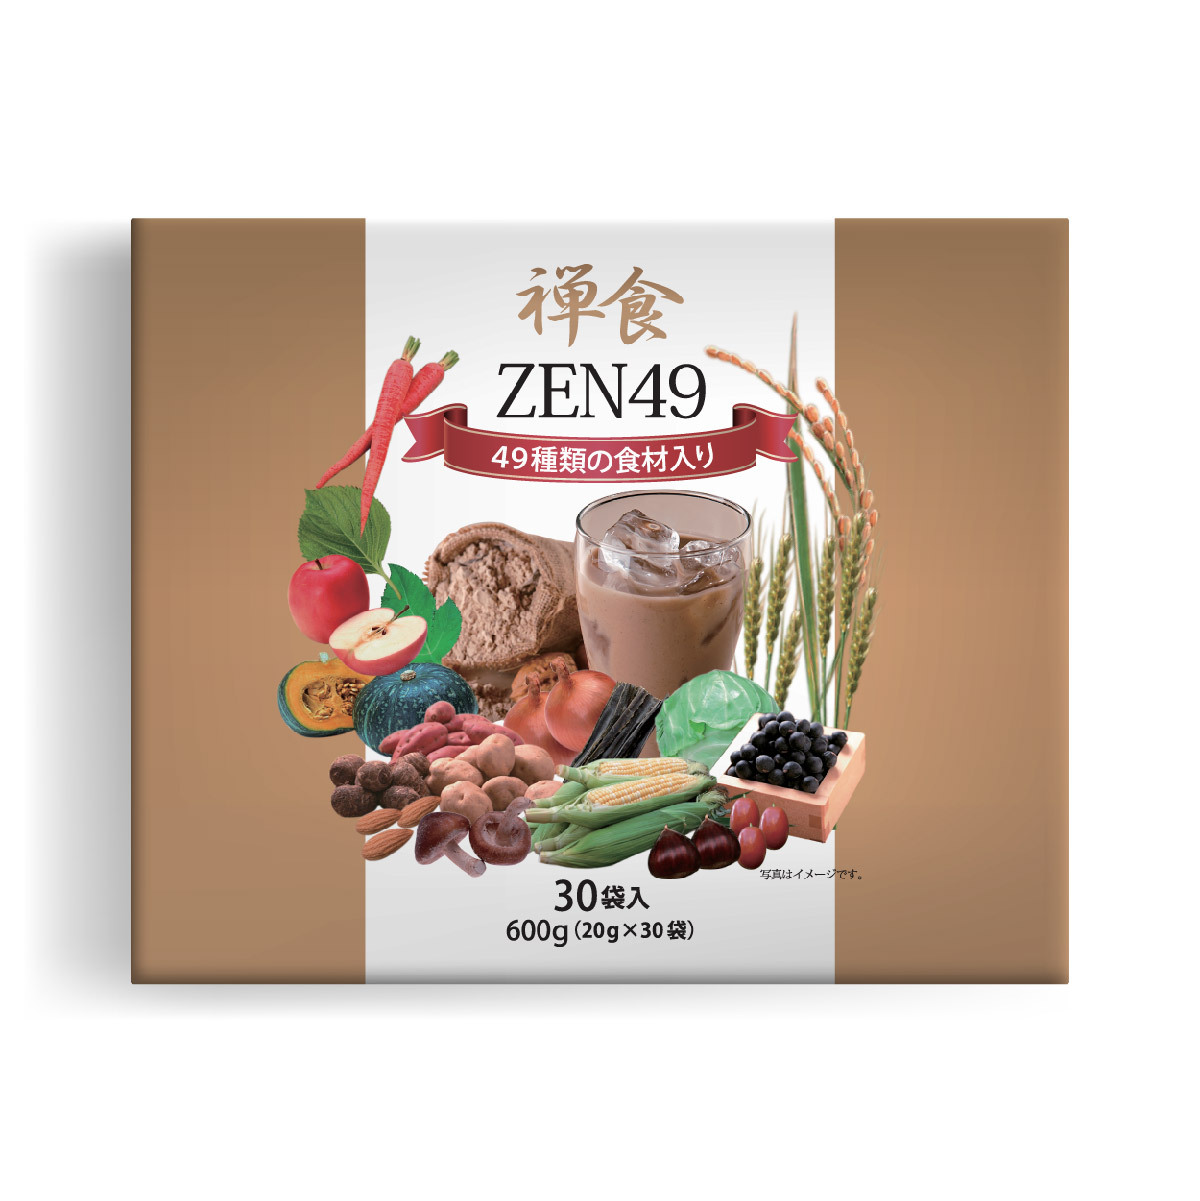 Zen49 禪食30包裝(1盒裝)